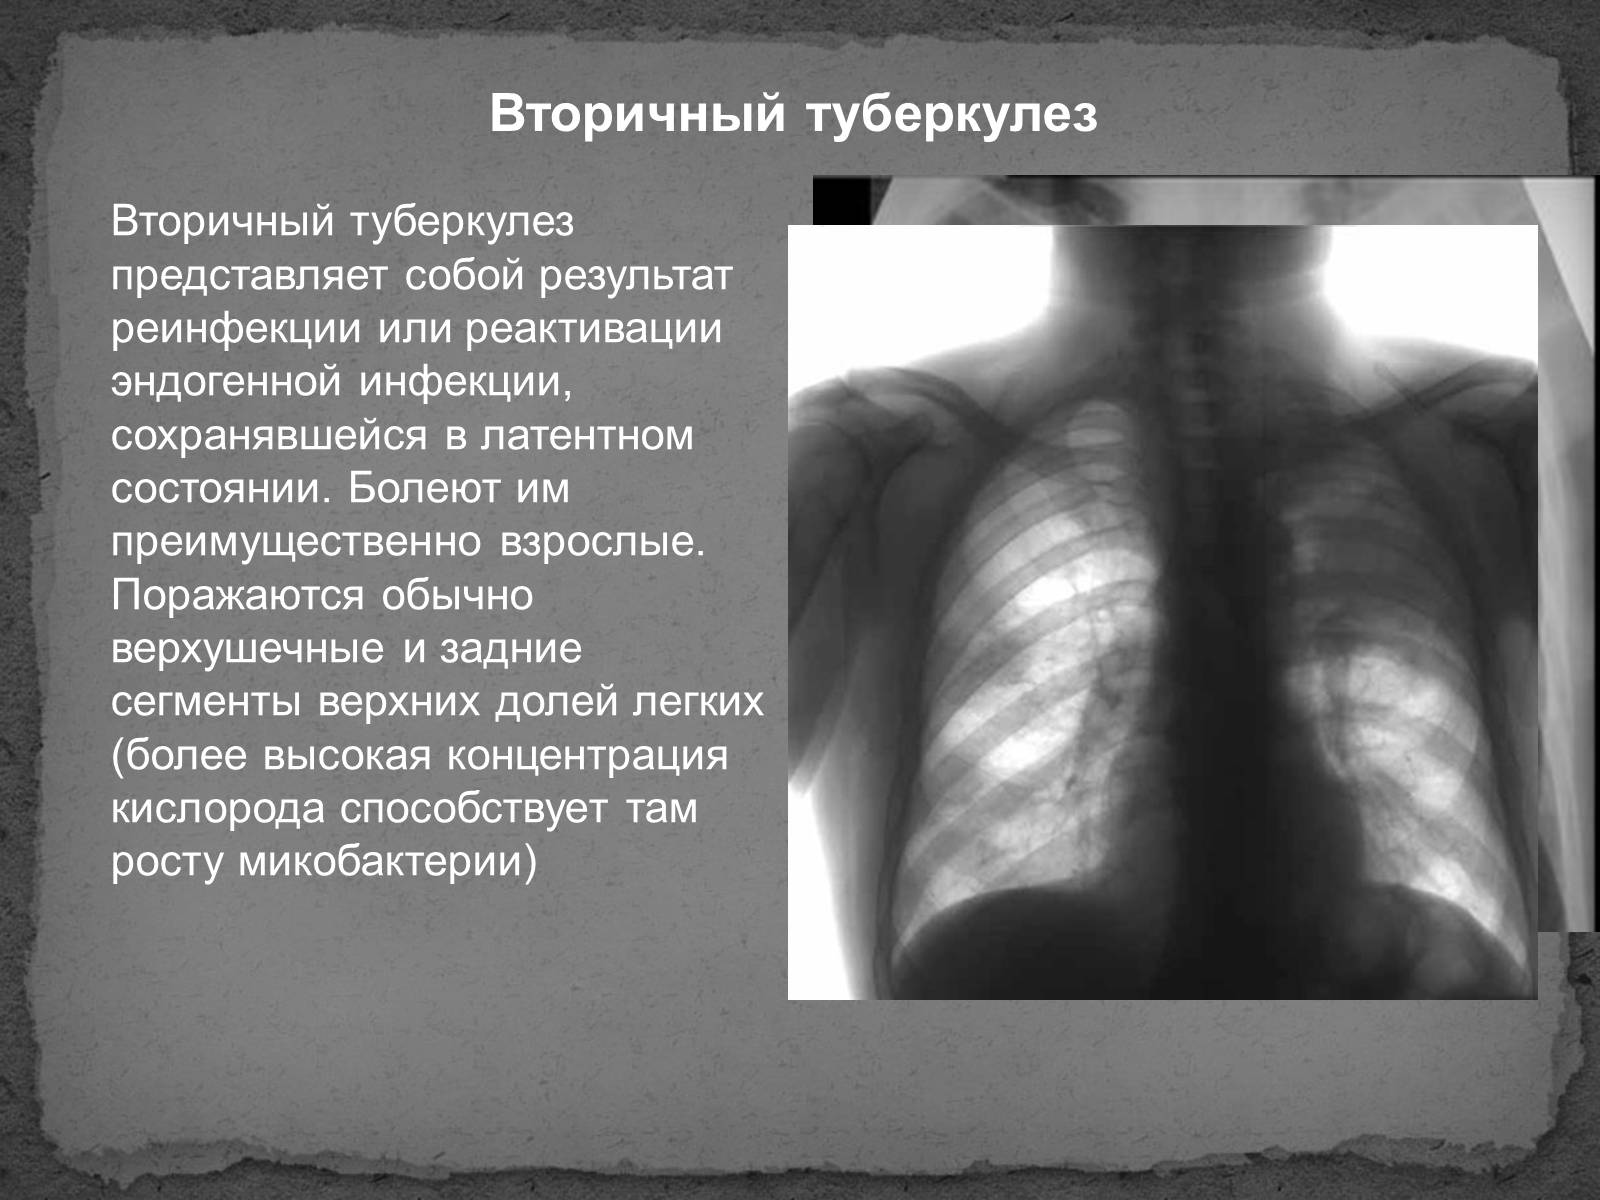 Вторичный туберкулез